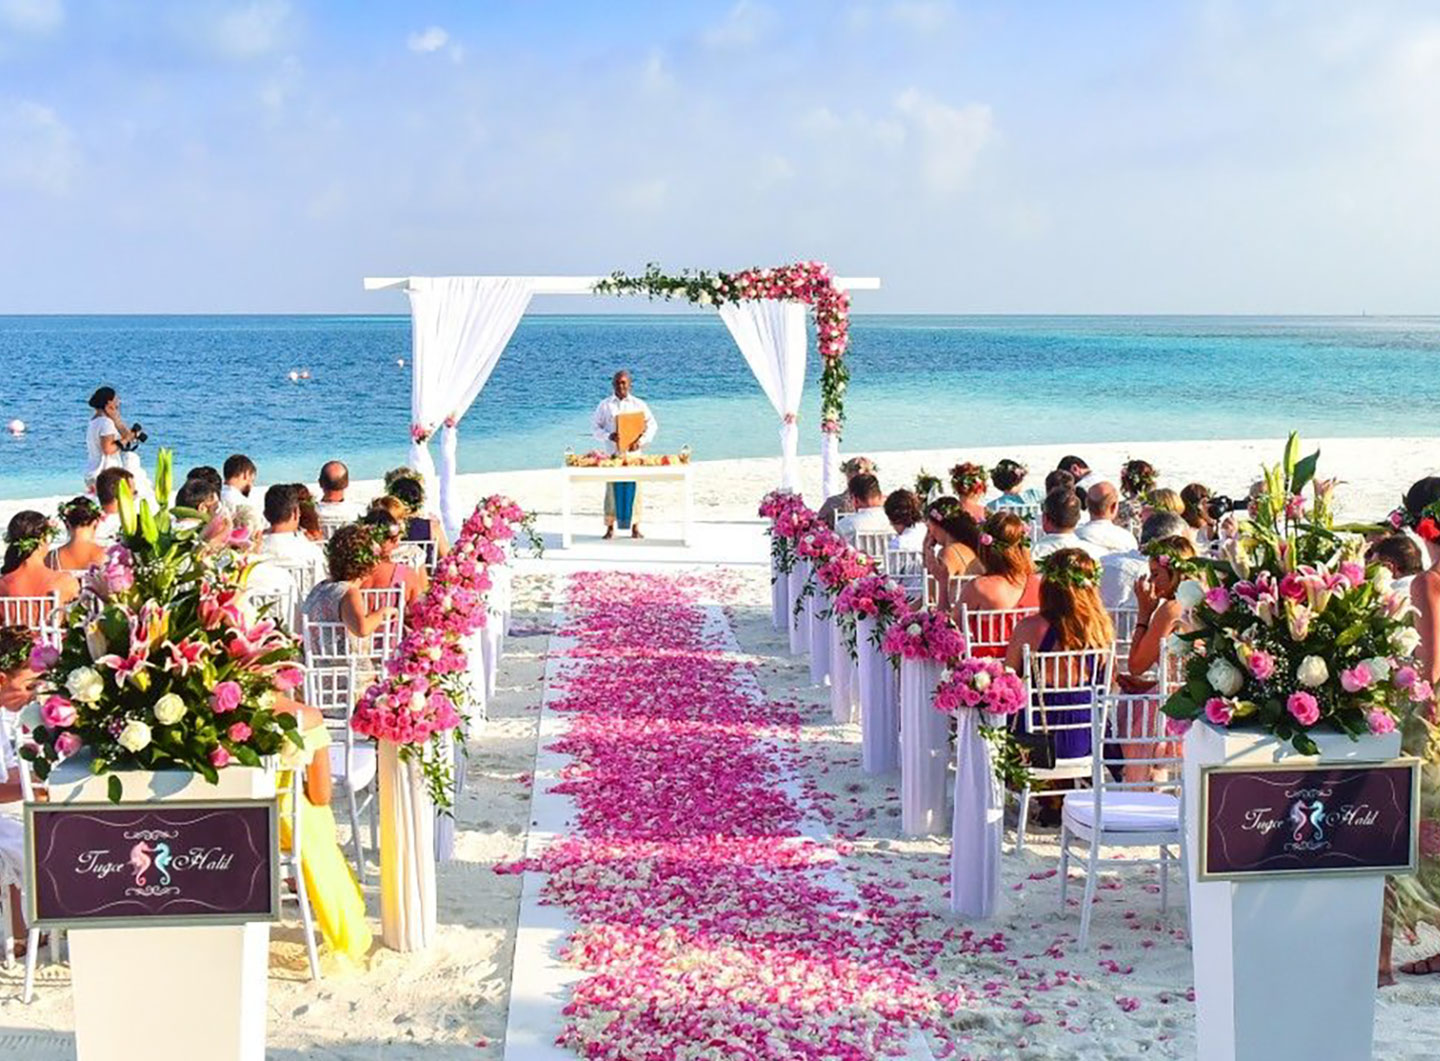 Wedding in Maldives, wedding venue maldives 